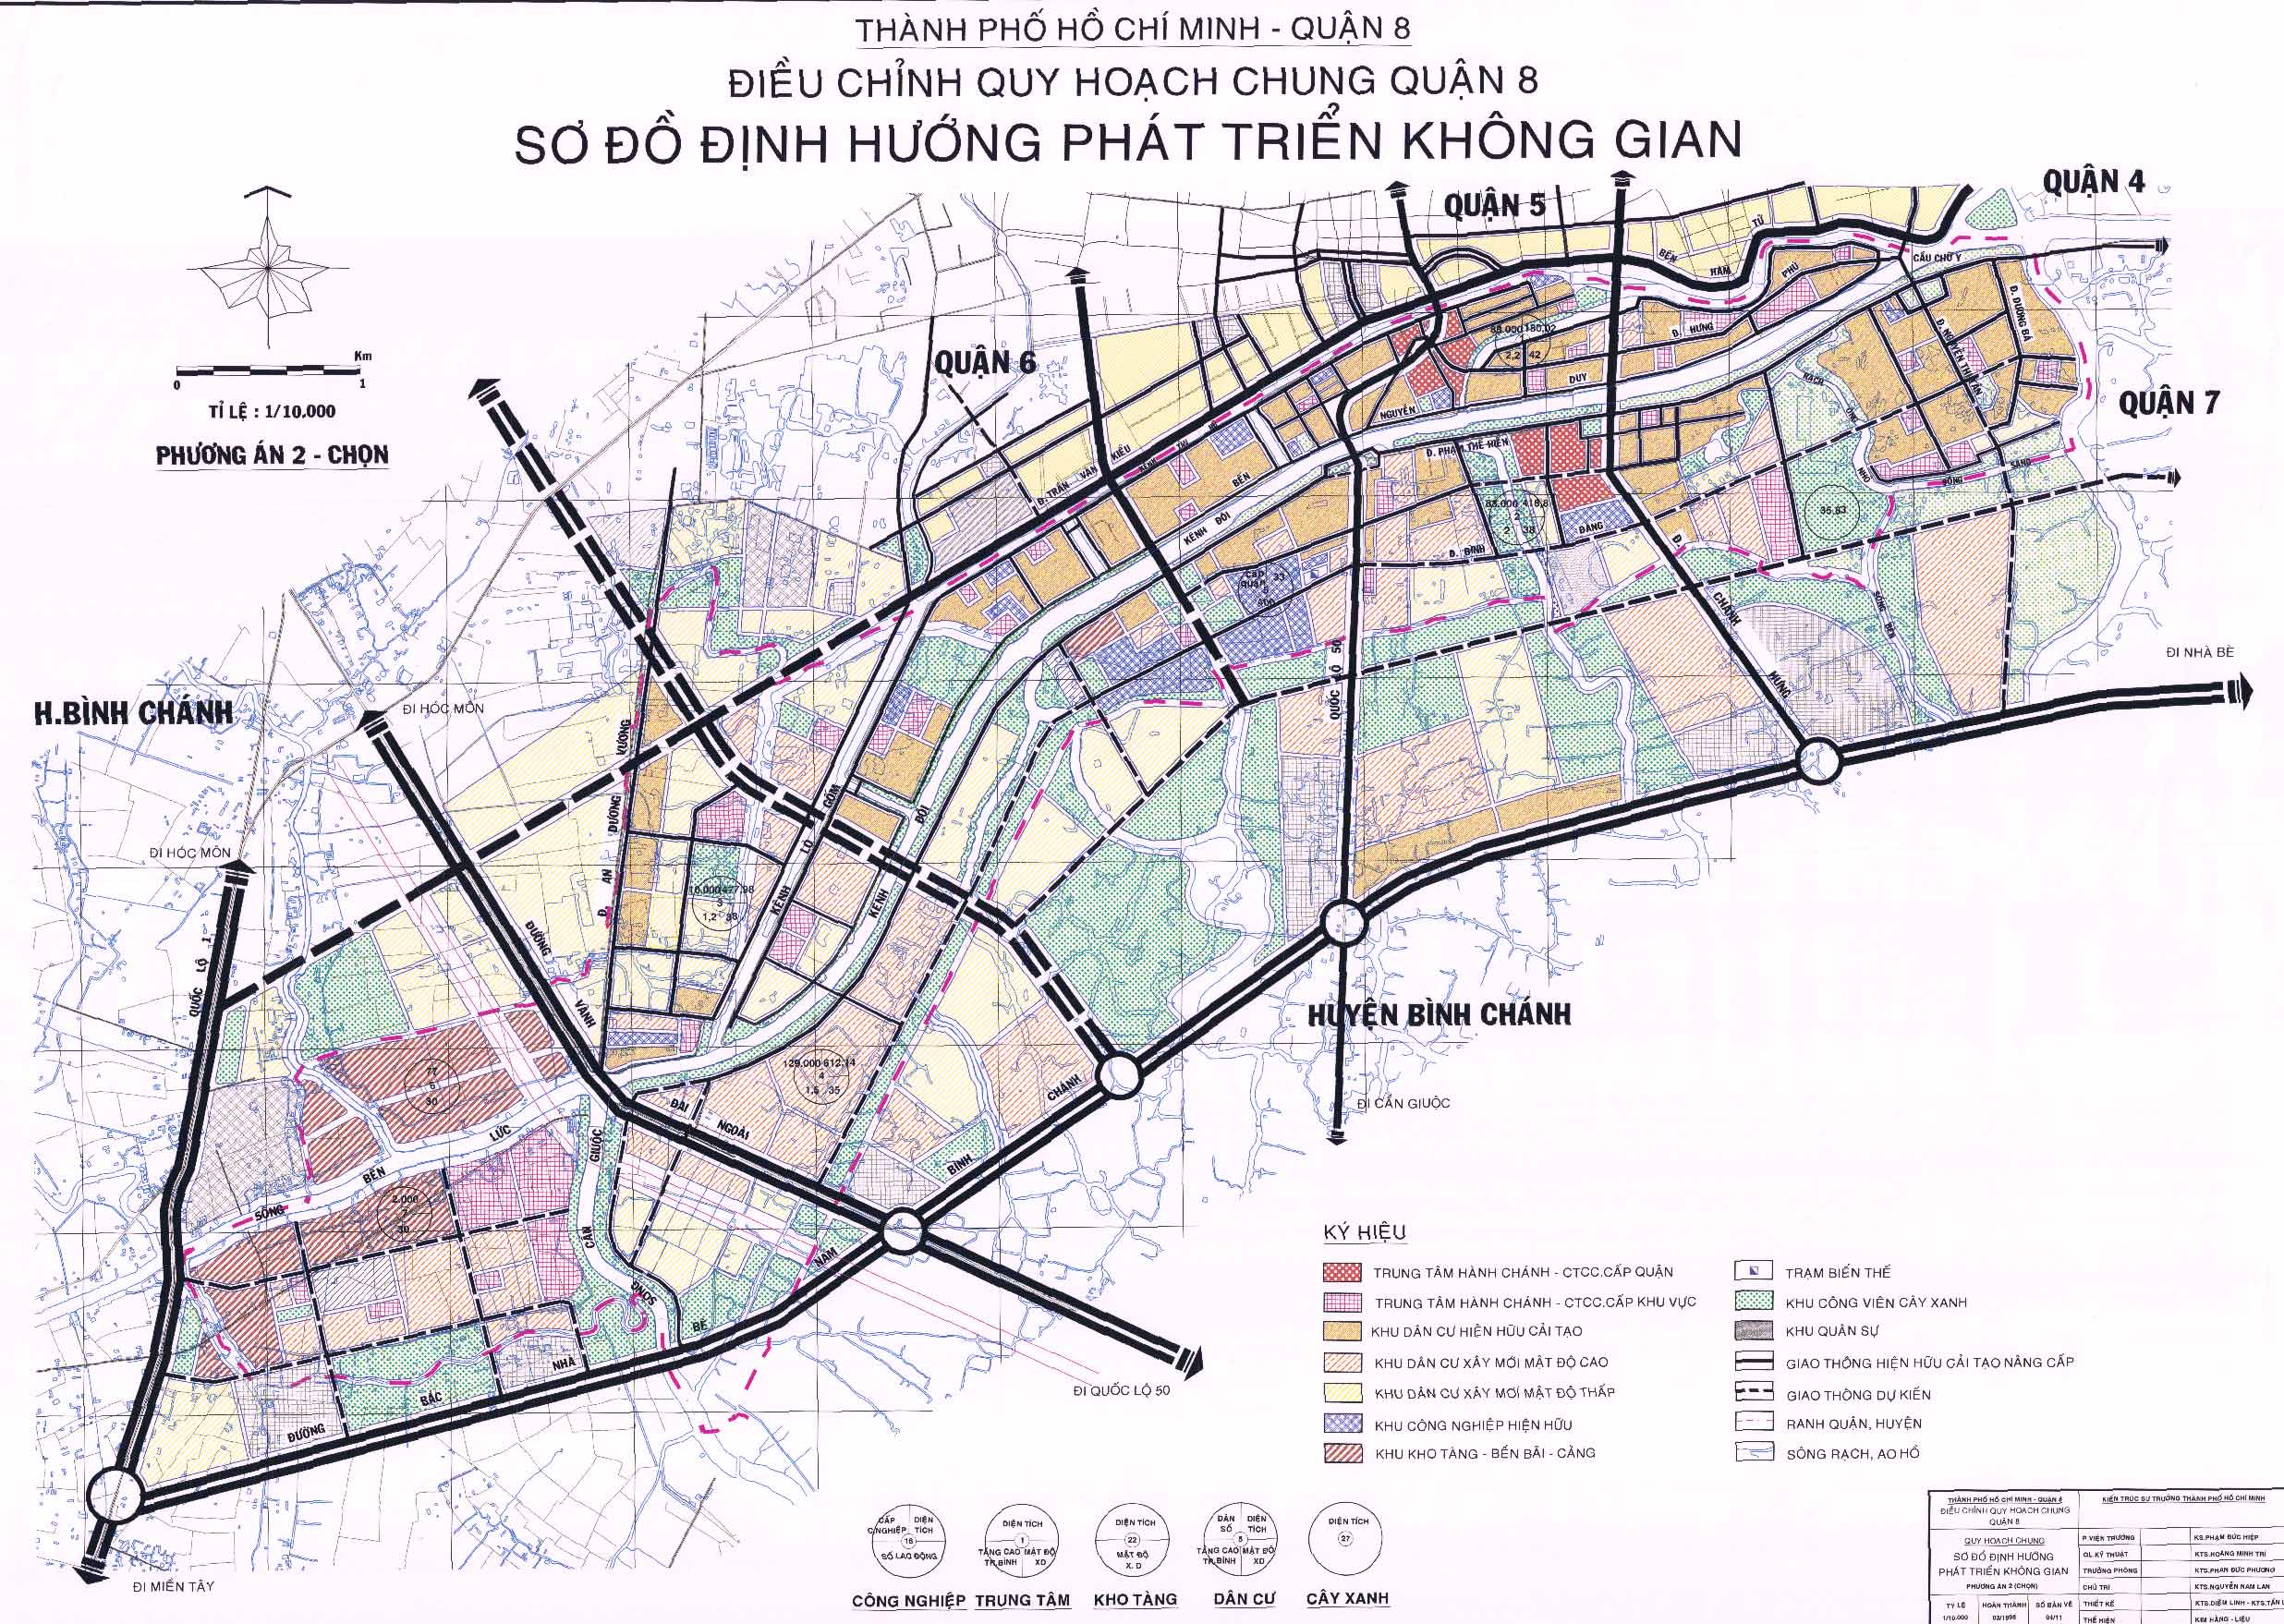 Bản đồ quy hoạch đính hướng phát triển không gian tại quận 8